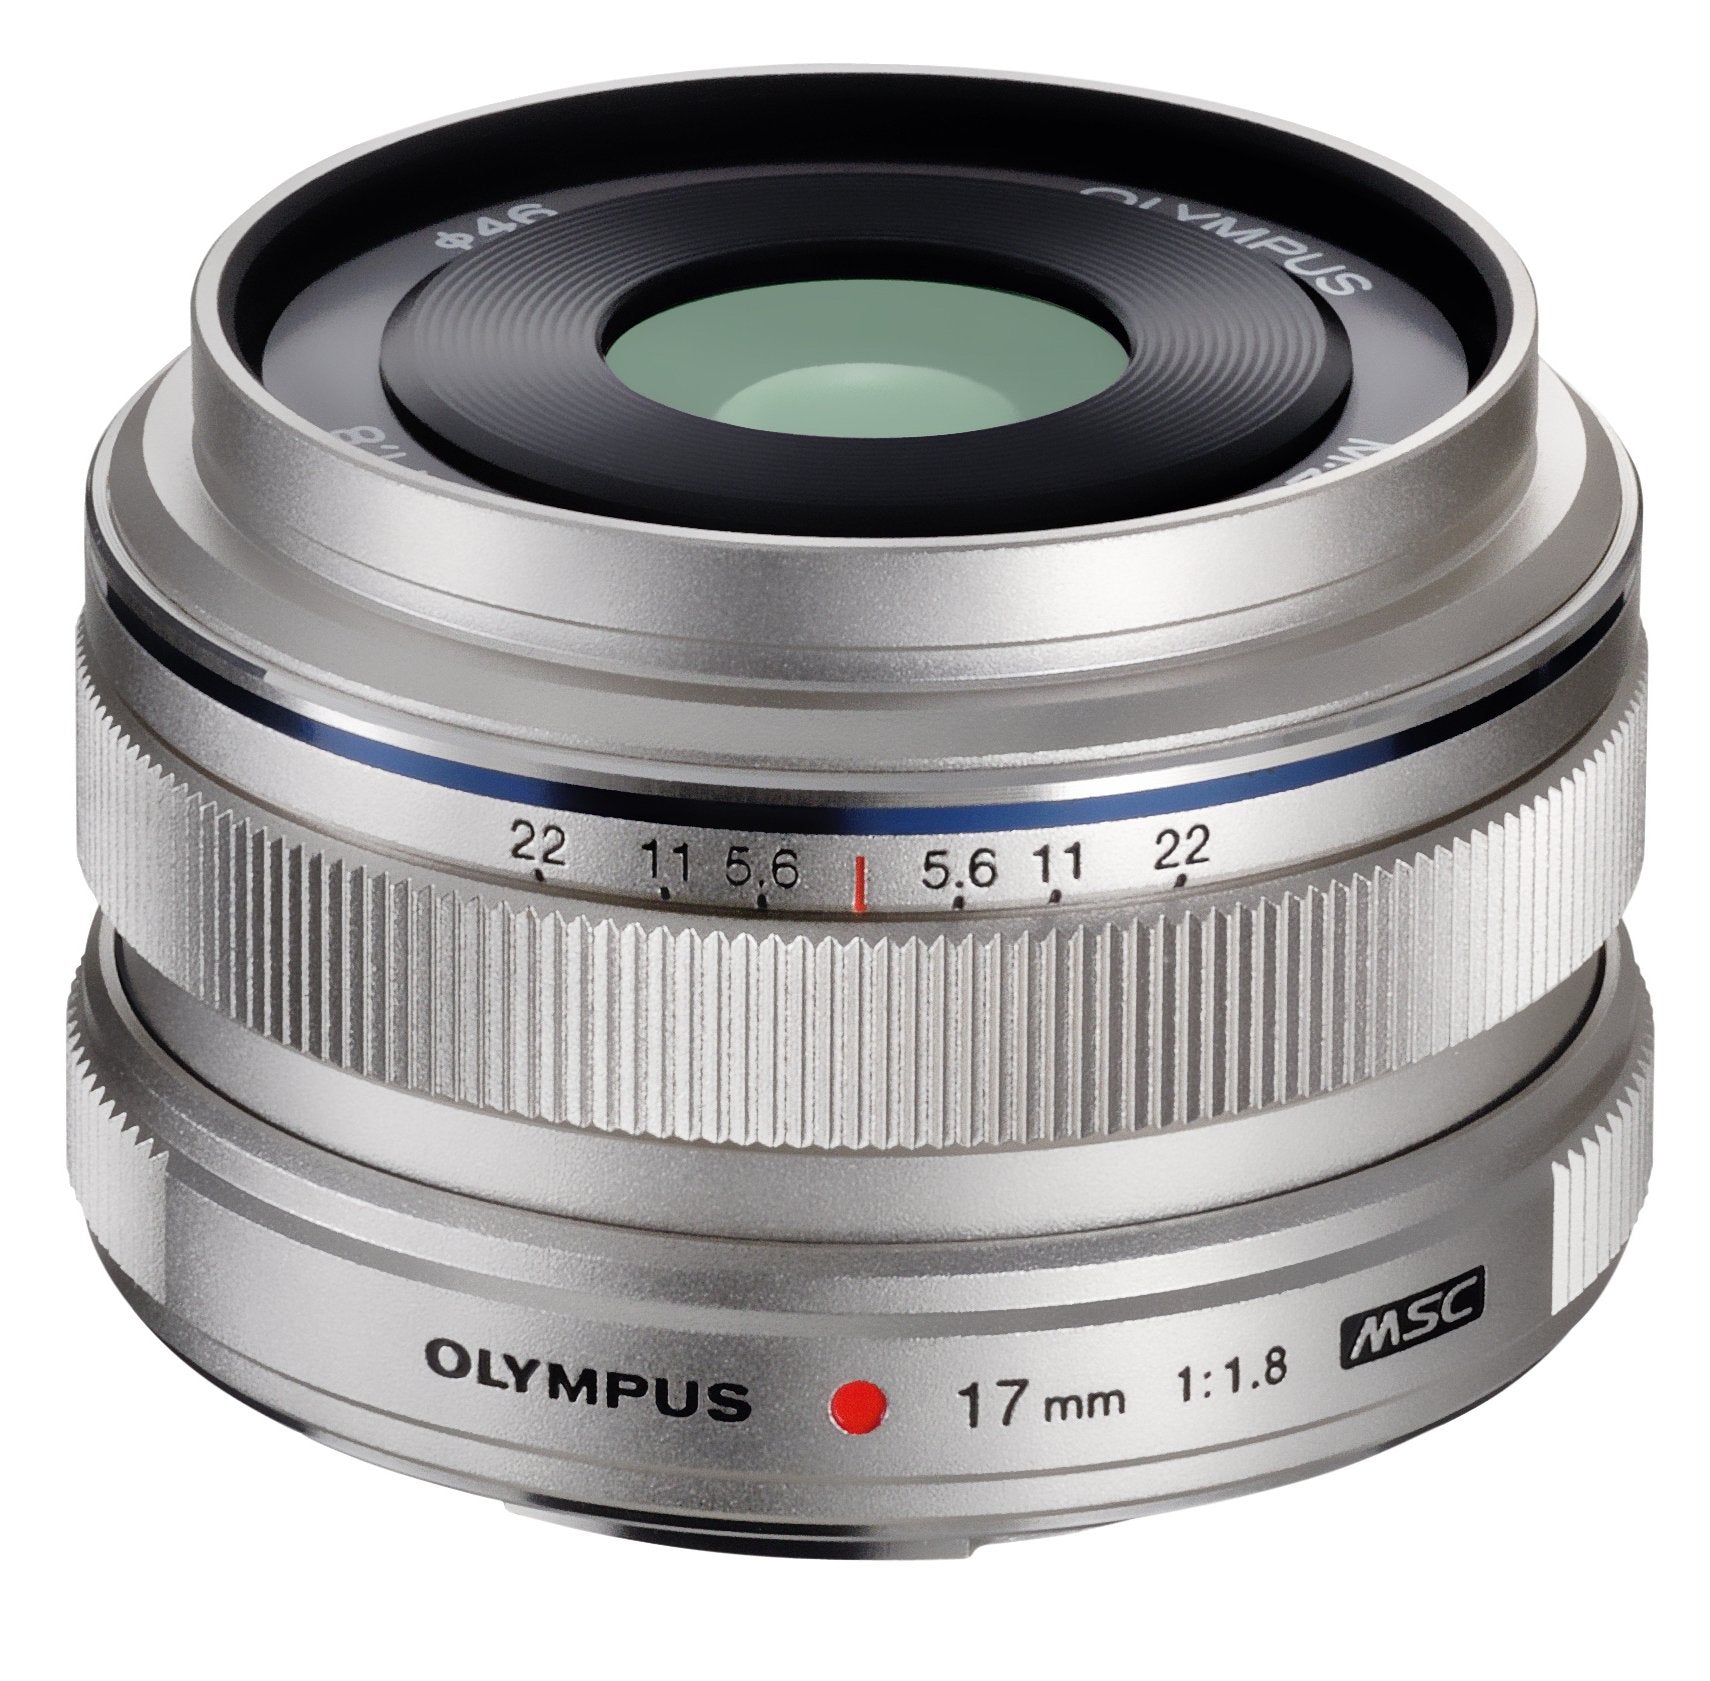 OM SYSTEM M.Zuiko Digital 17mm f/1.8 Lens (Silver) OM SYSTEM Lens - Mirrorless Fixed Focal Length